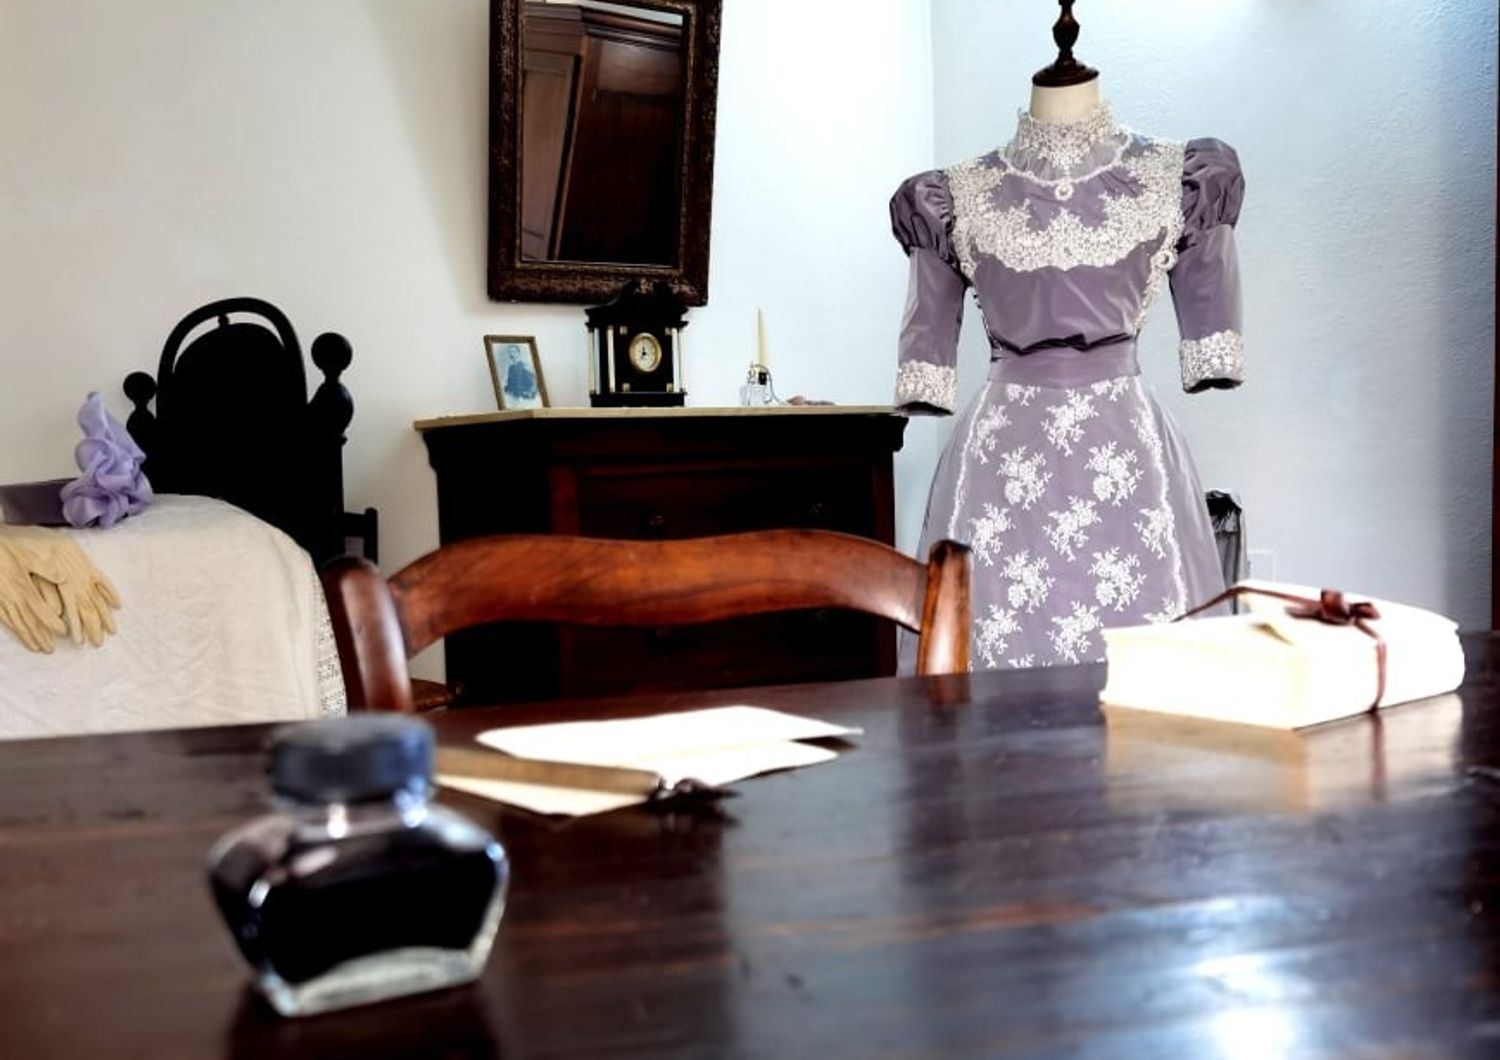 L'abito nuziale di Grazia Deledda nella sua camera da letto nella casa museo di Nuoro